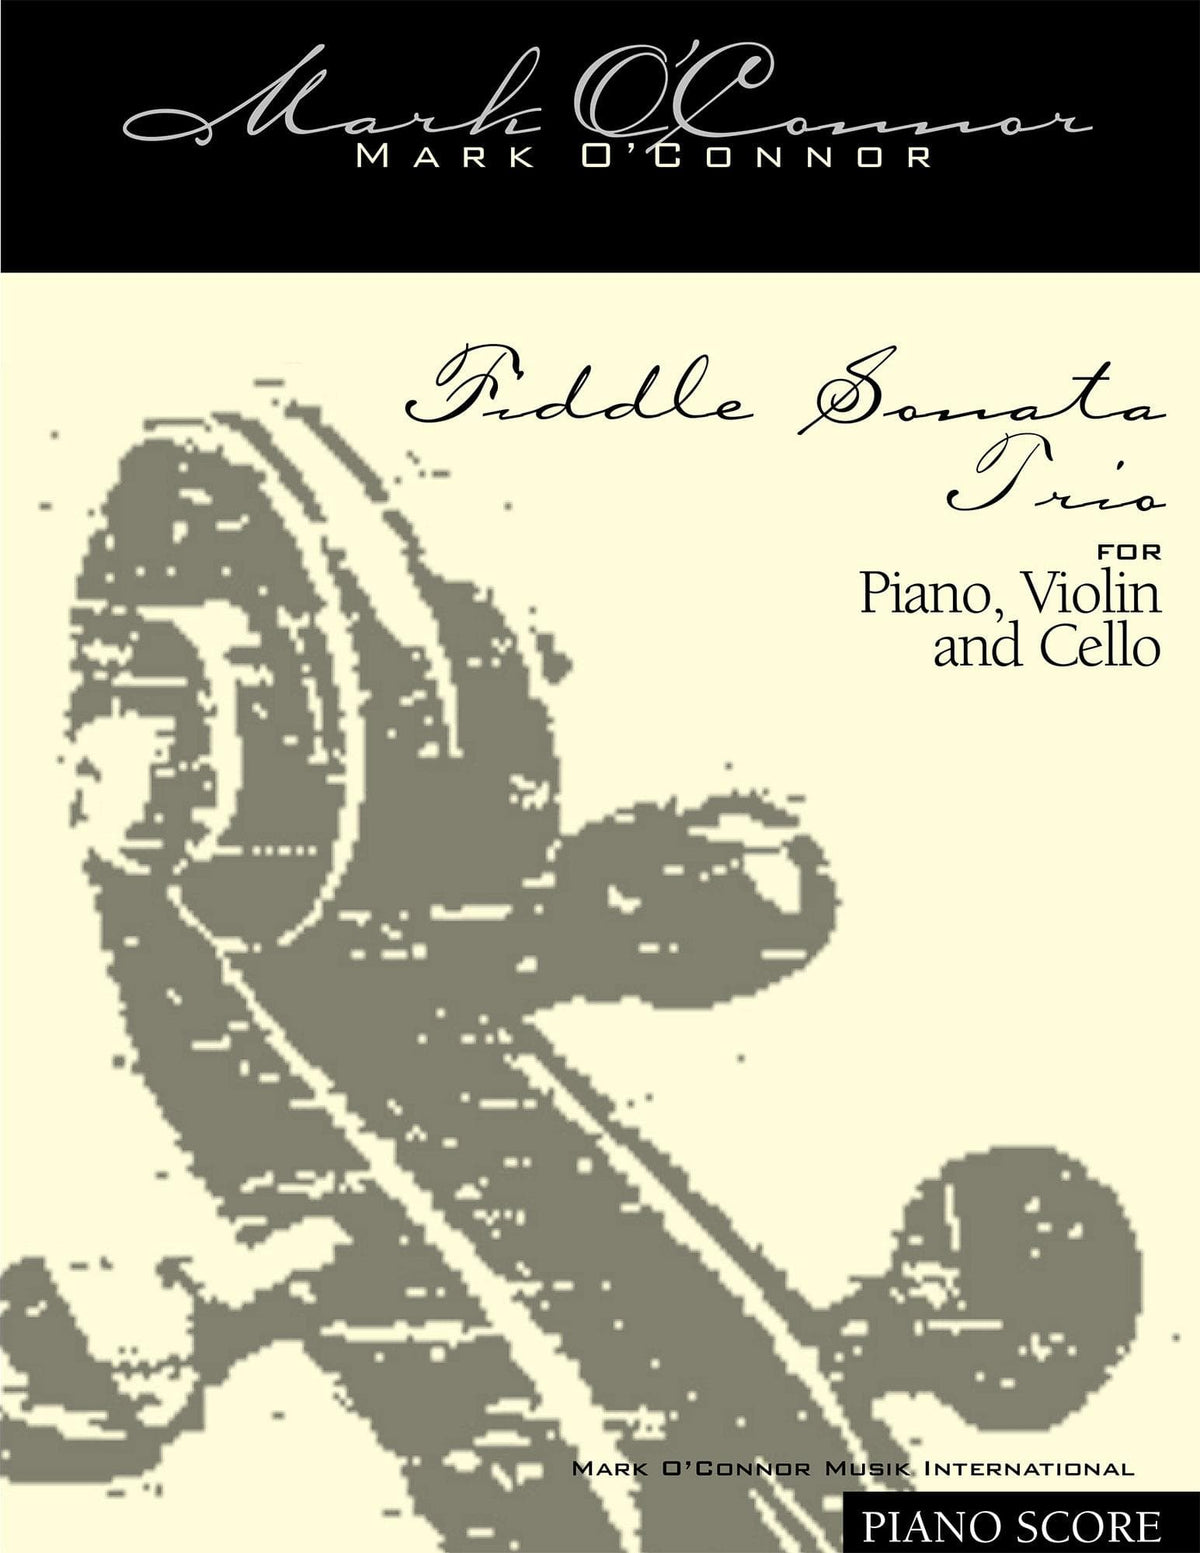 O'Connor, Mark - Fiddle Sonata Trio for Piano, Violin, and Cello - Score - Digital Download